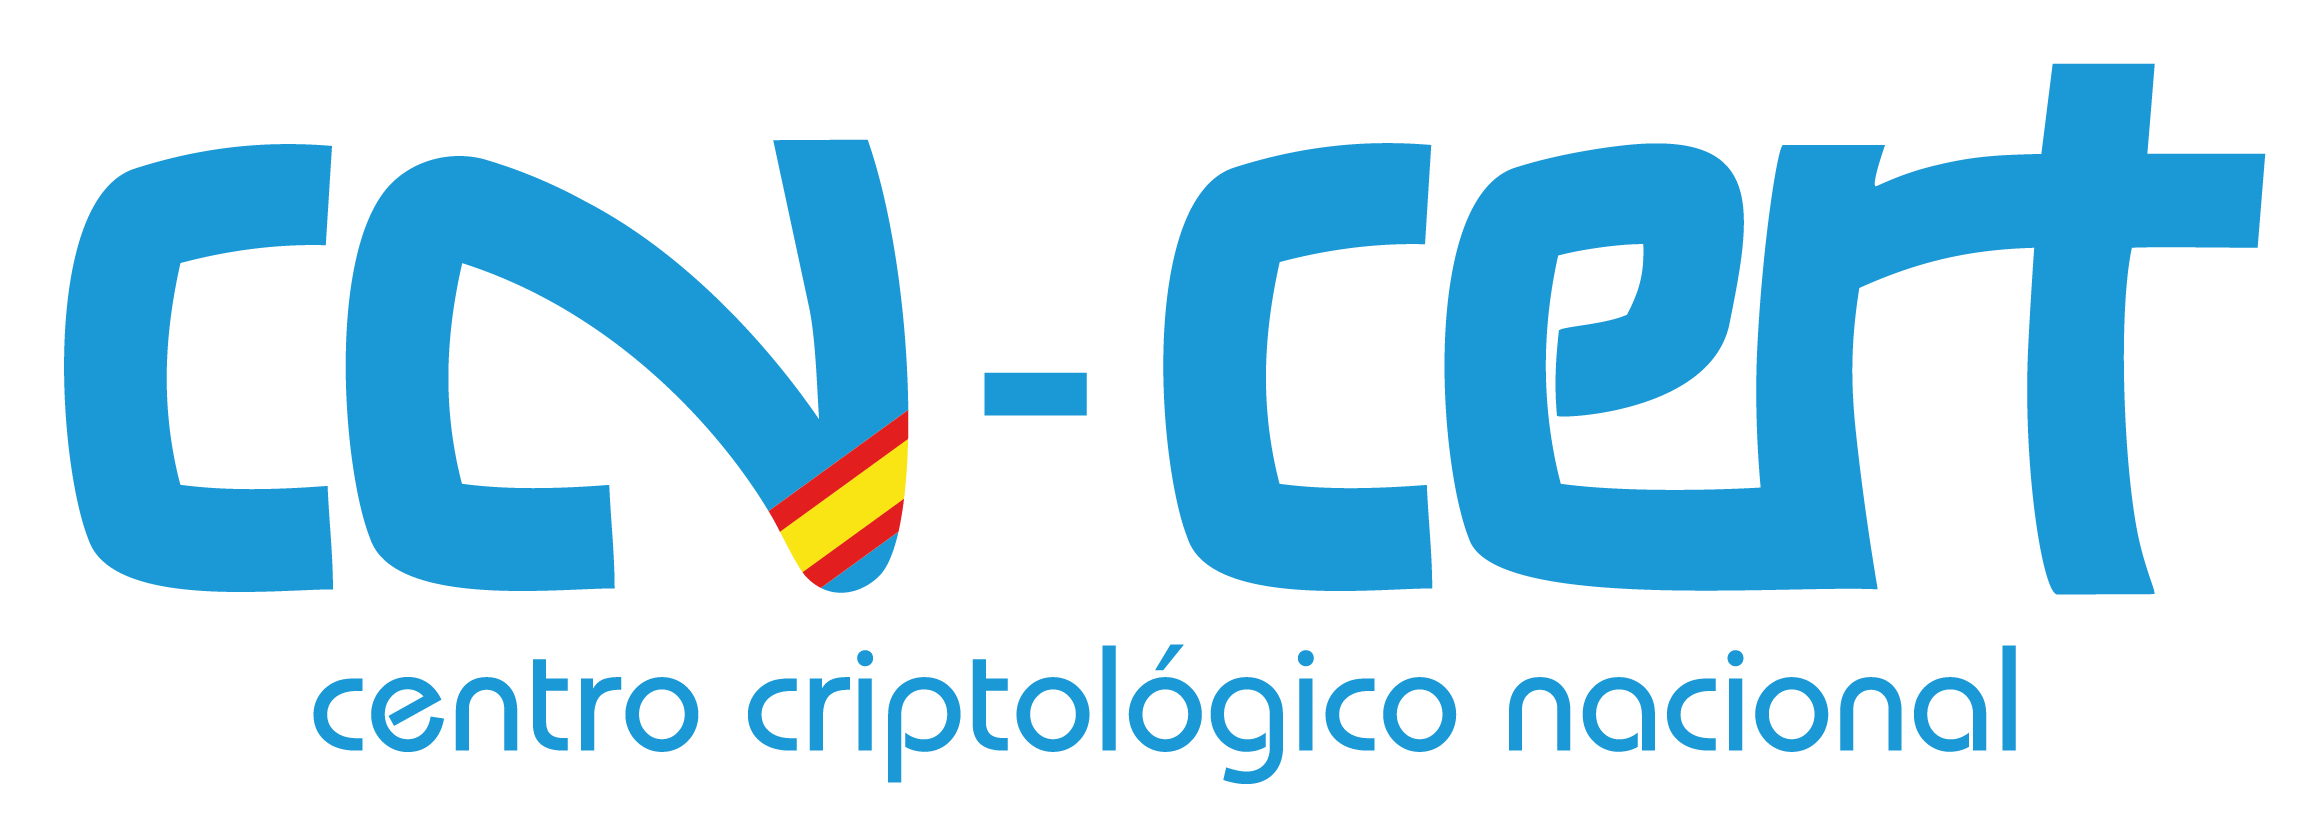 Centro criptológico nacional